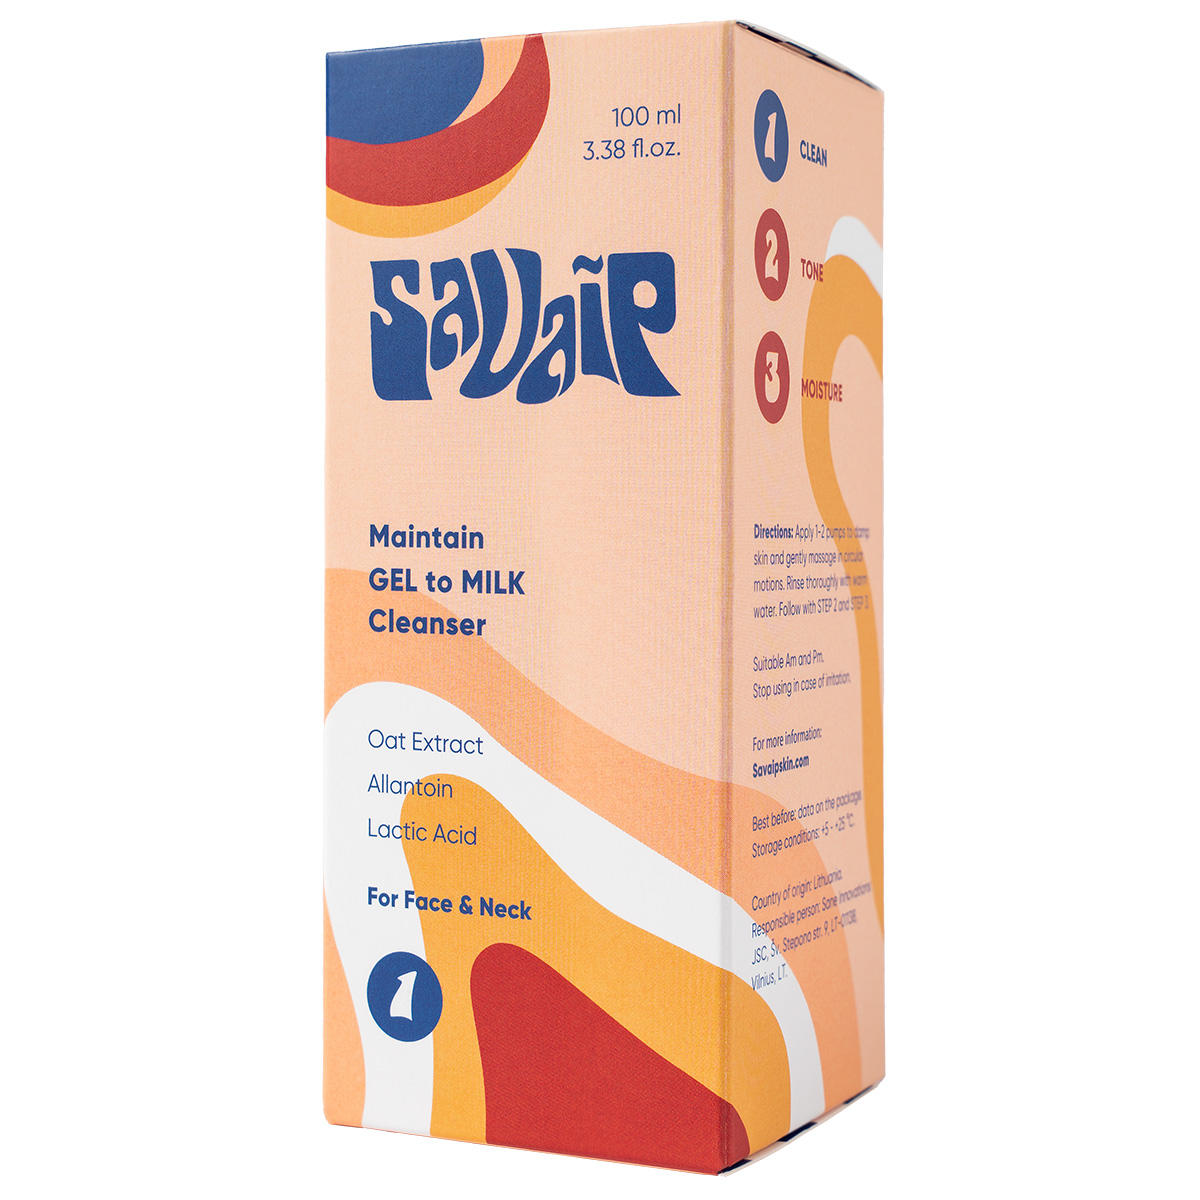 Savaip Gel-to-Milk Cleanser 100 ml - 3